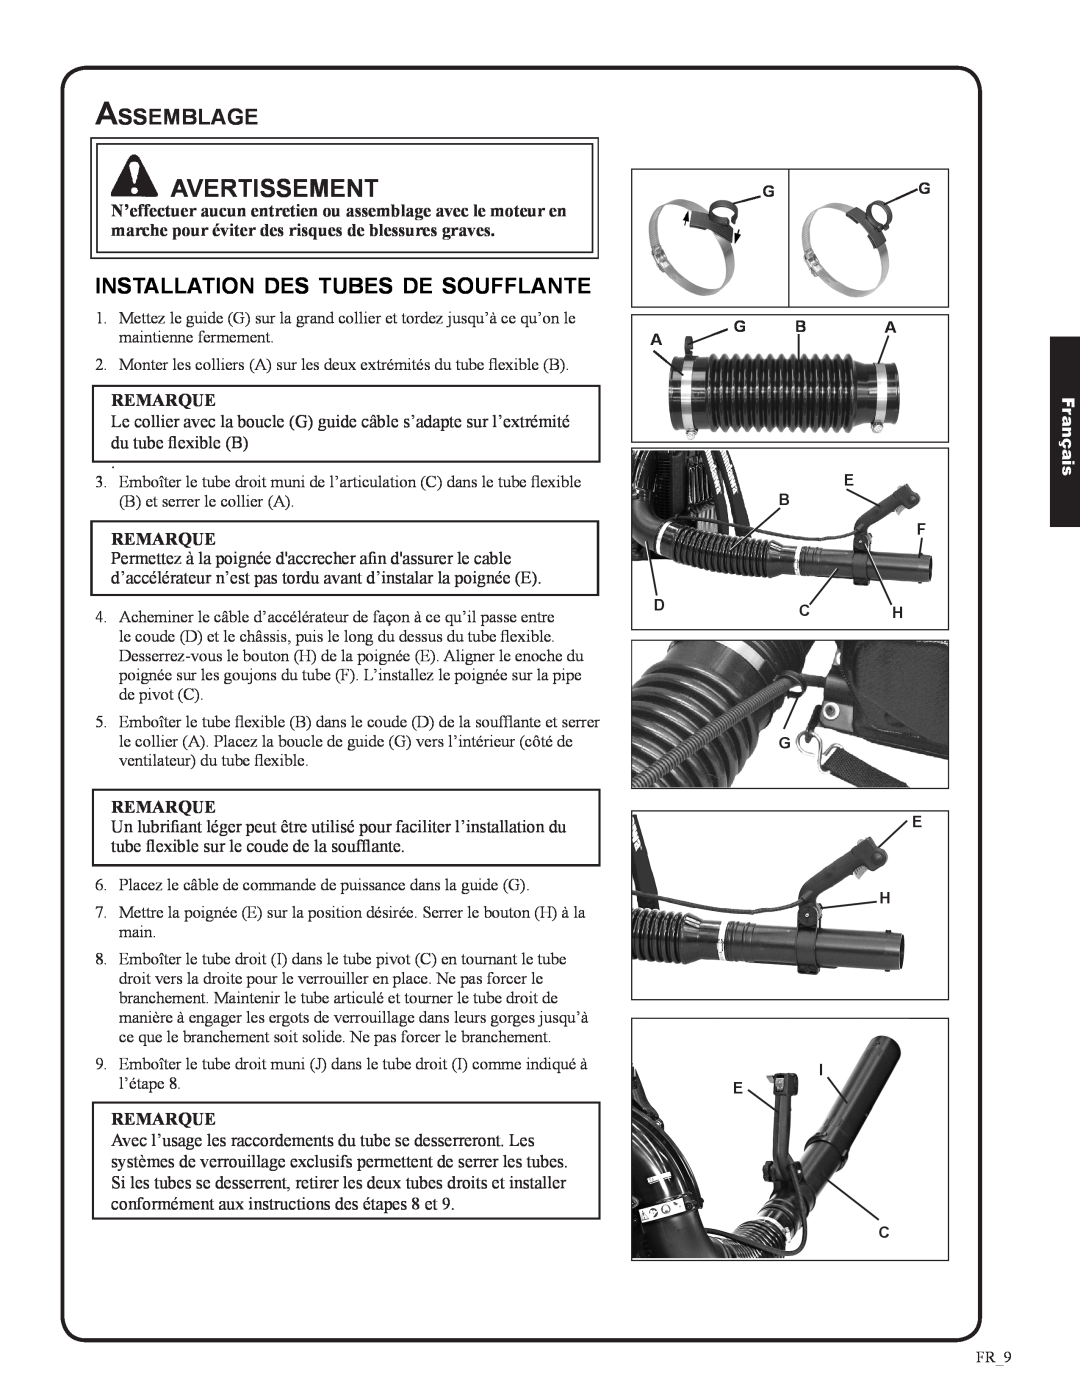 Shindaiwa 82050, EB633RT manual Assemblage, installation des tubes de soufflante, Remarque, Avertissement, Français 